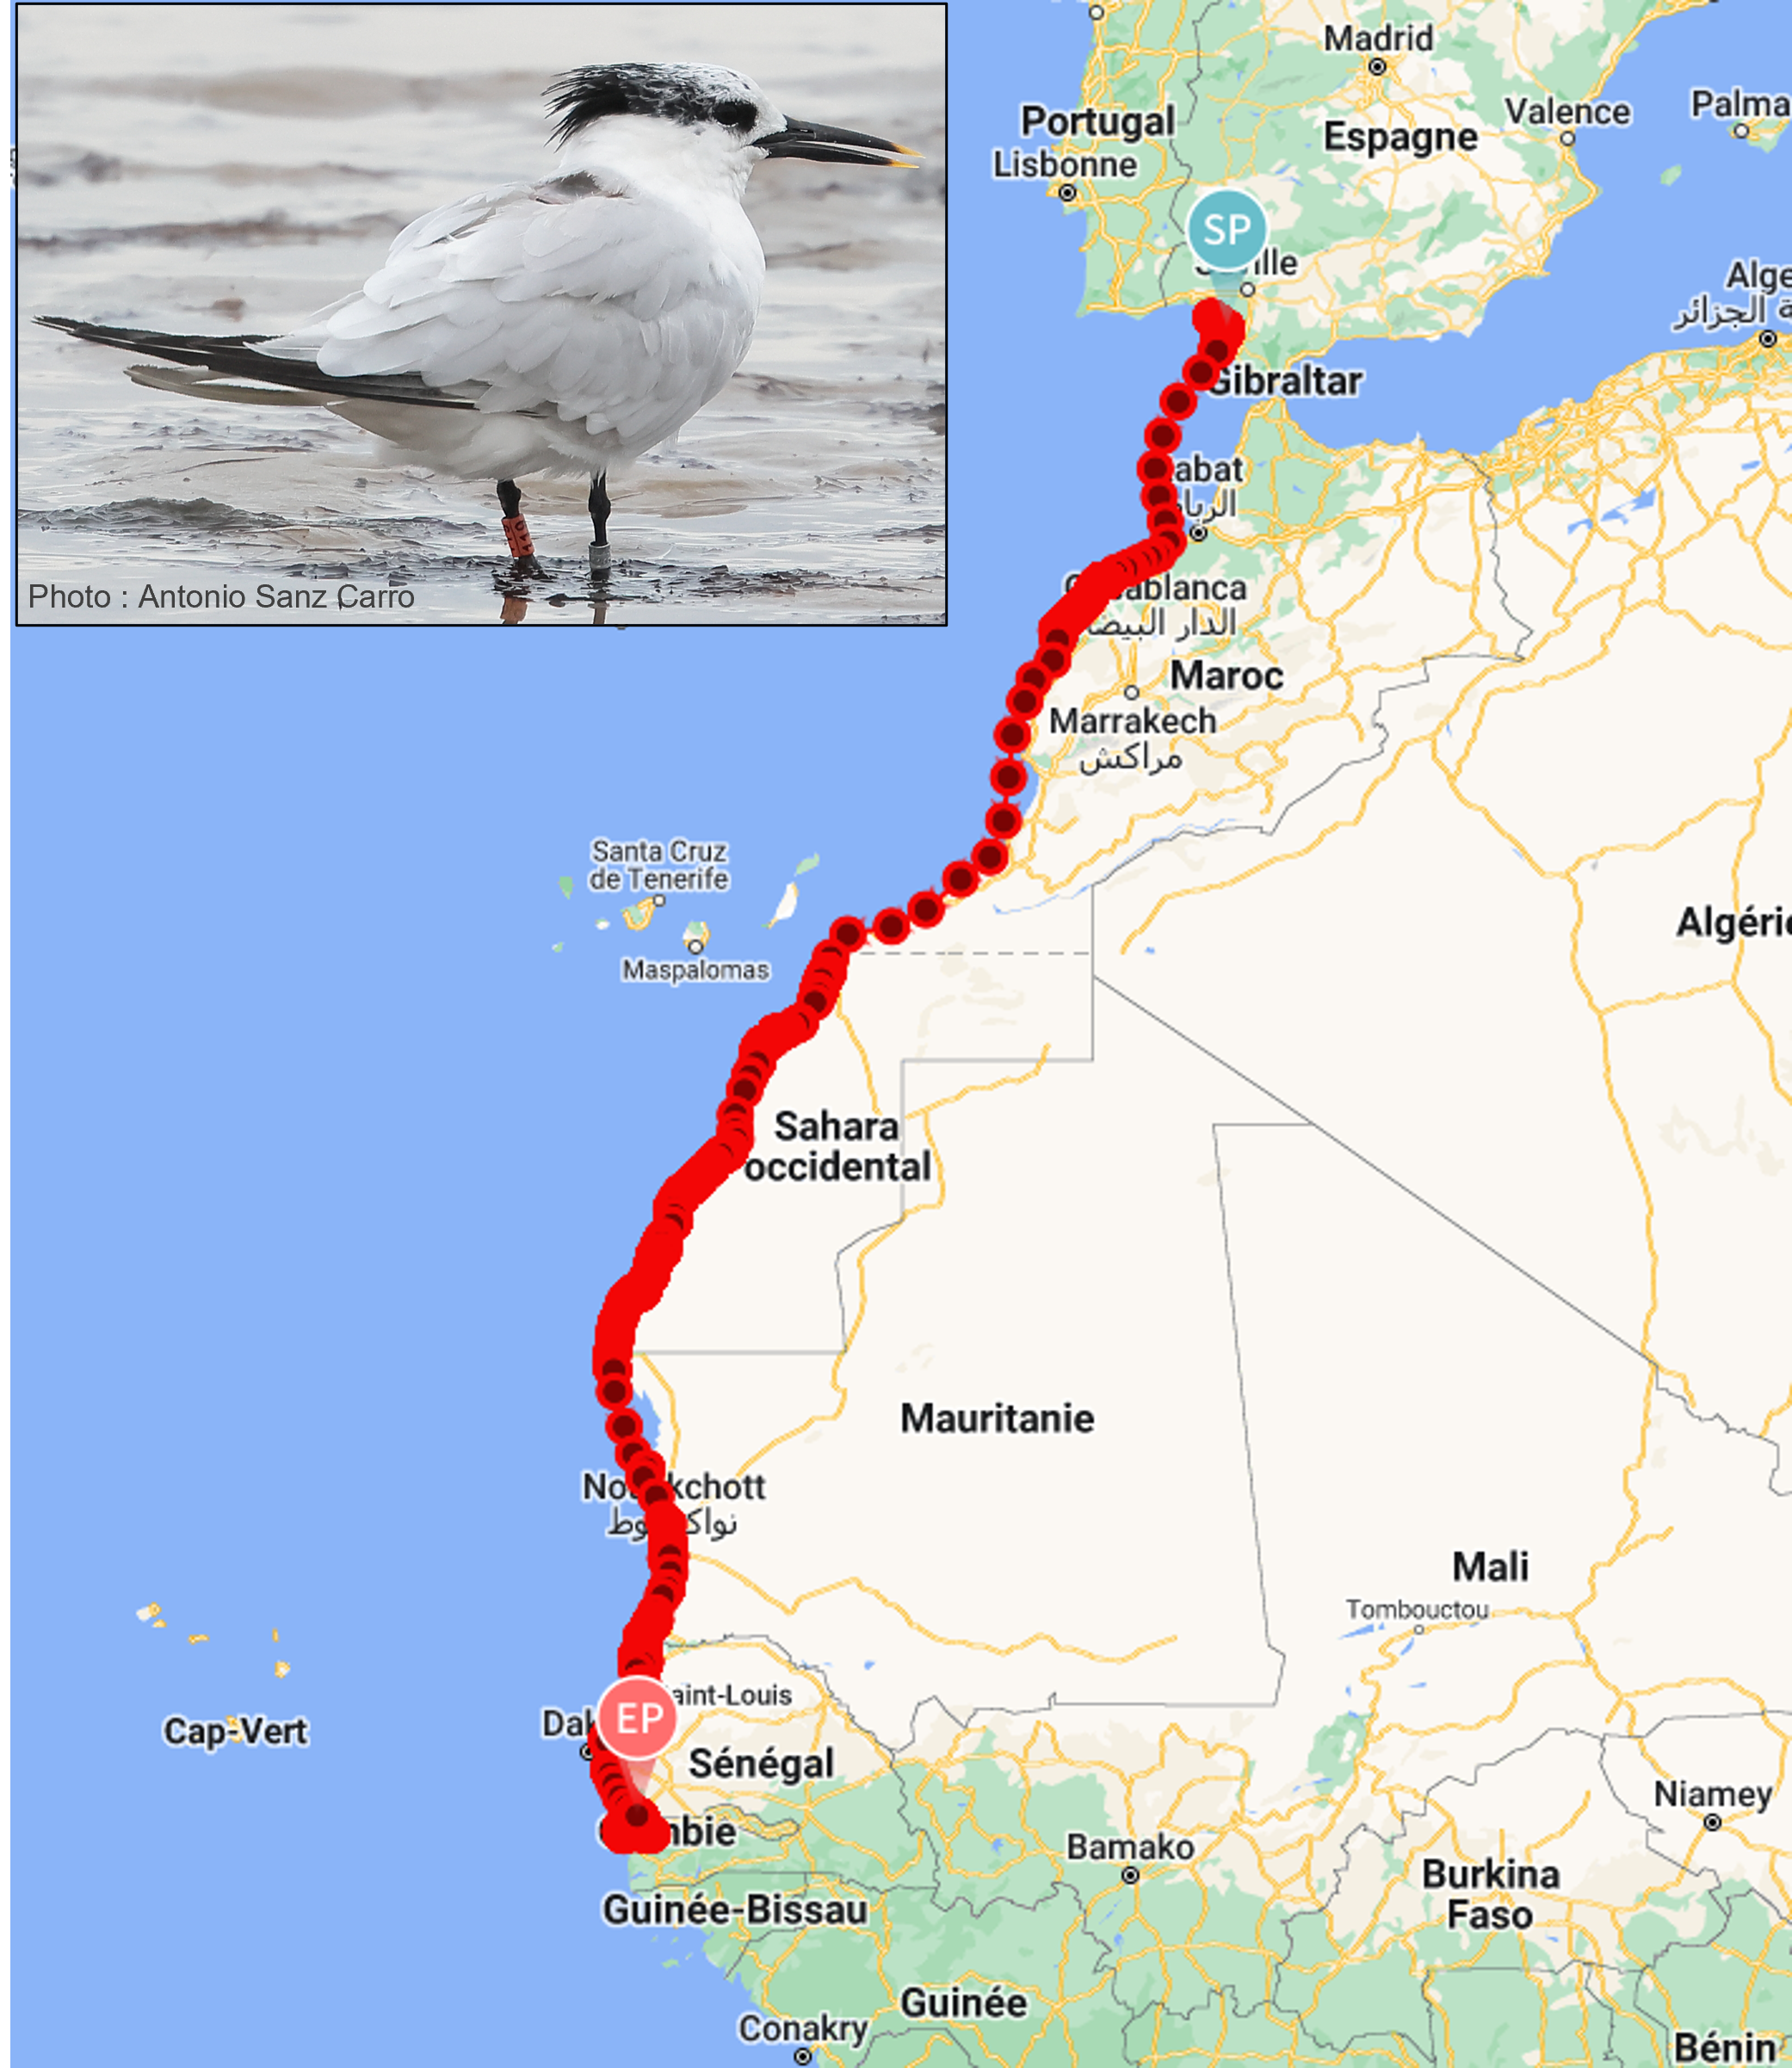 Sterne caugek équipée d’un GPS photographiée par un ornithologue en Espagne au mois de septembre et trajet de la première des sternes suivie à avoir rejoint les côtes Africaines après une longue pause au sud de l’Espagne.